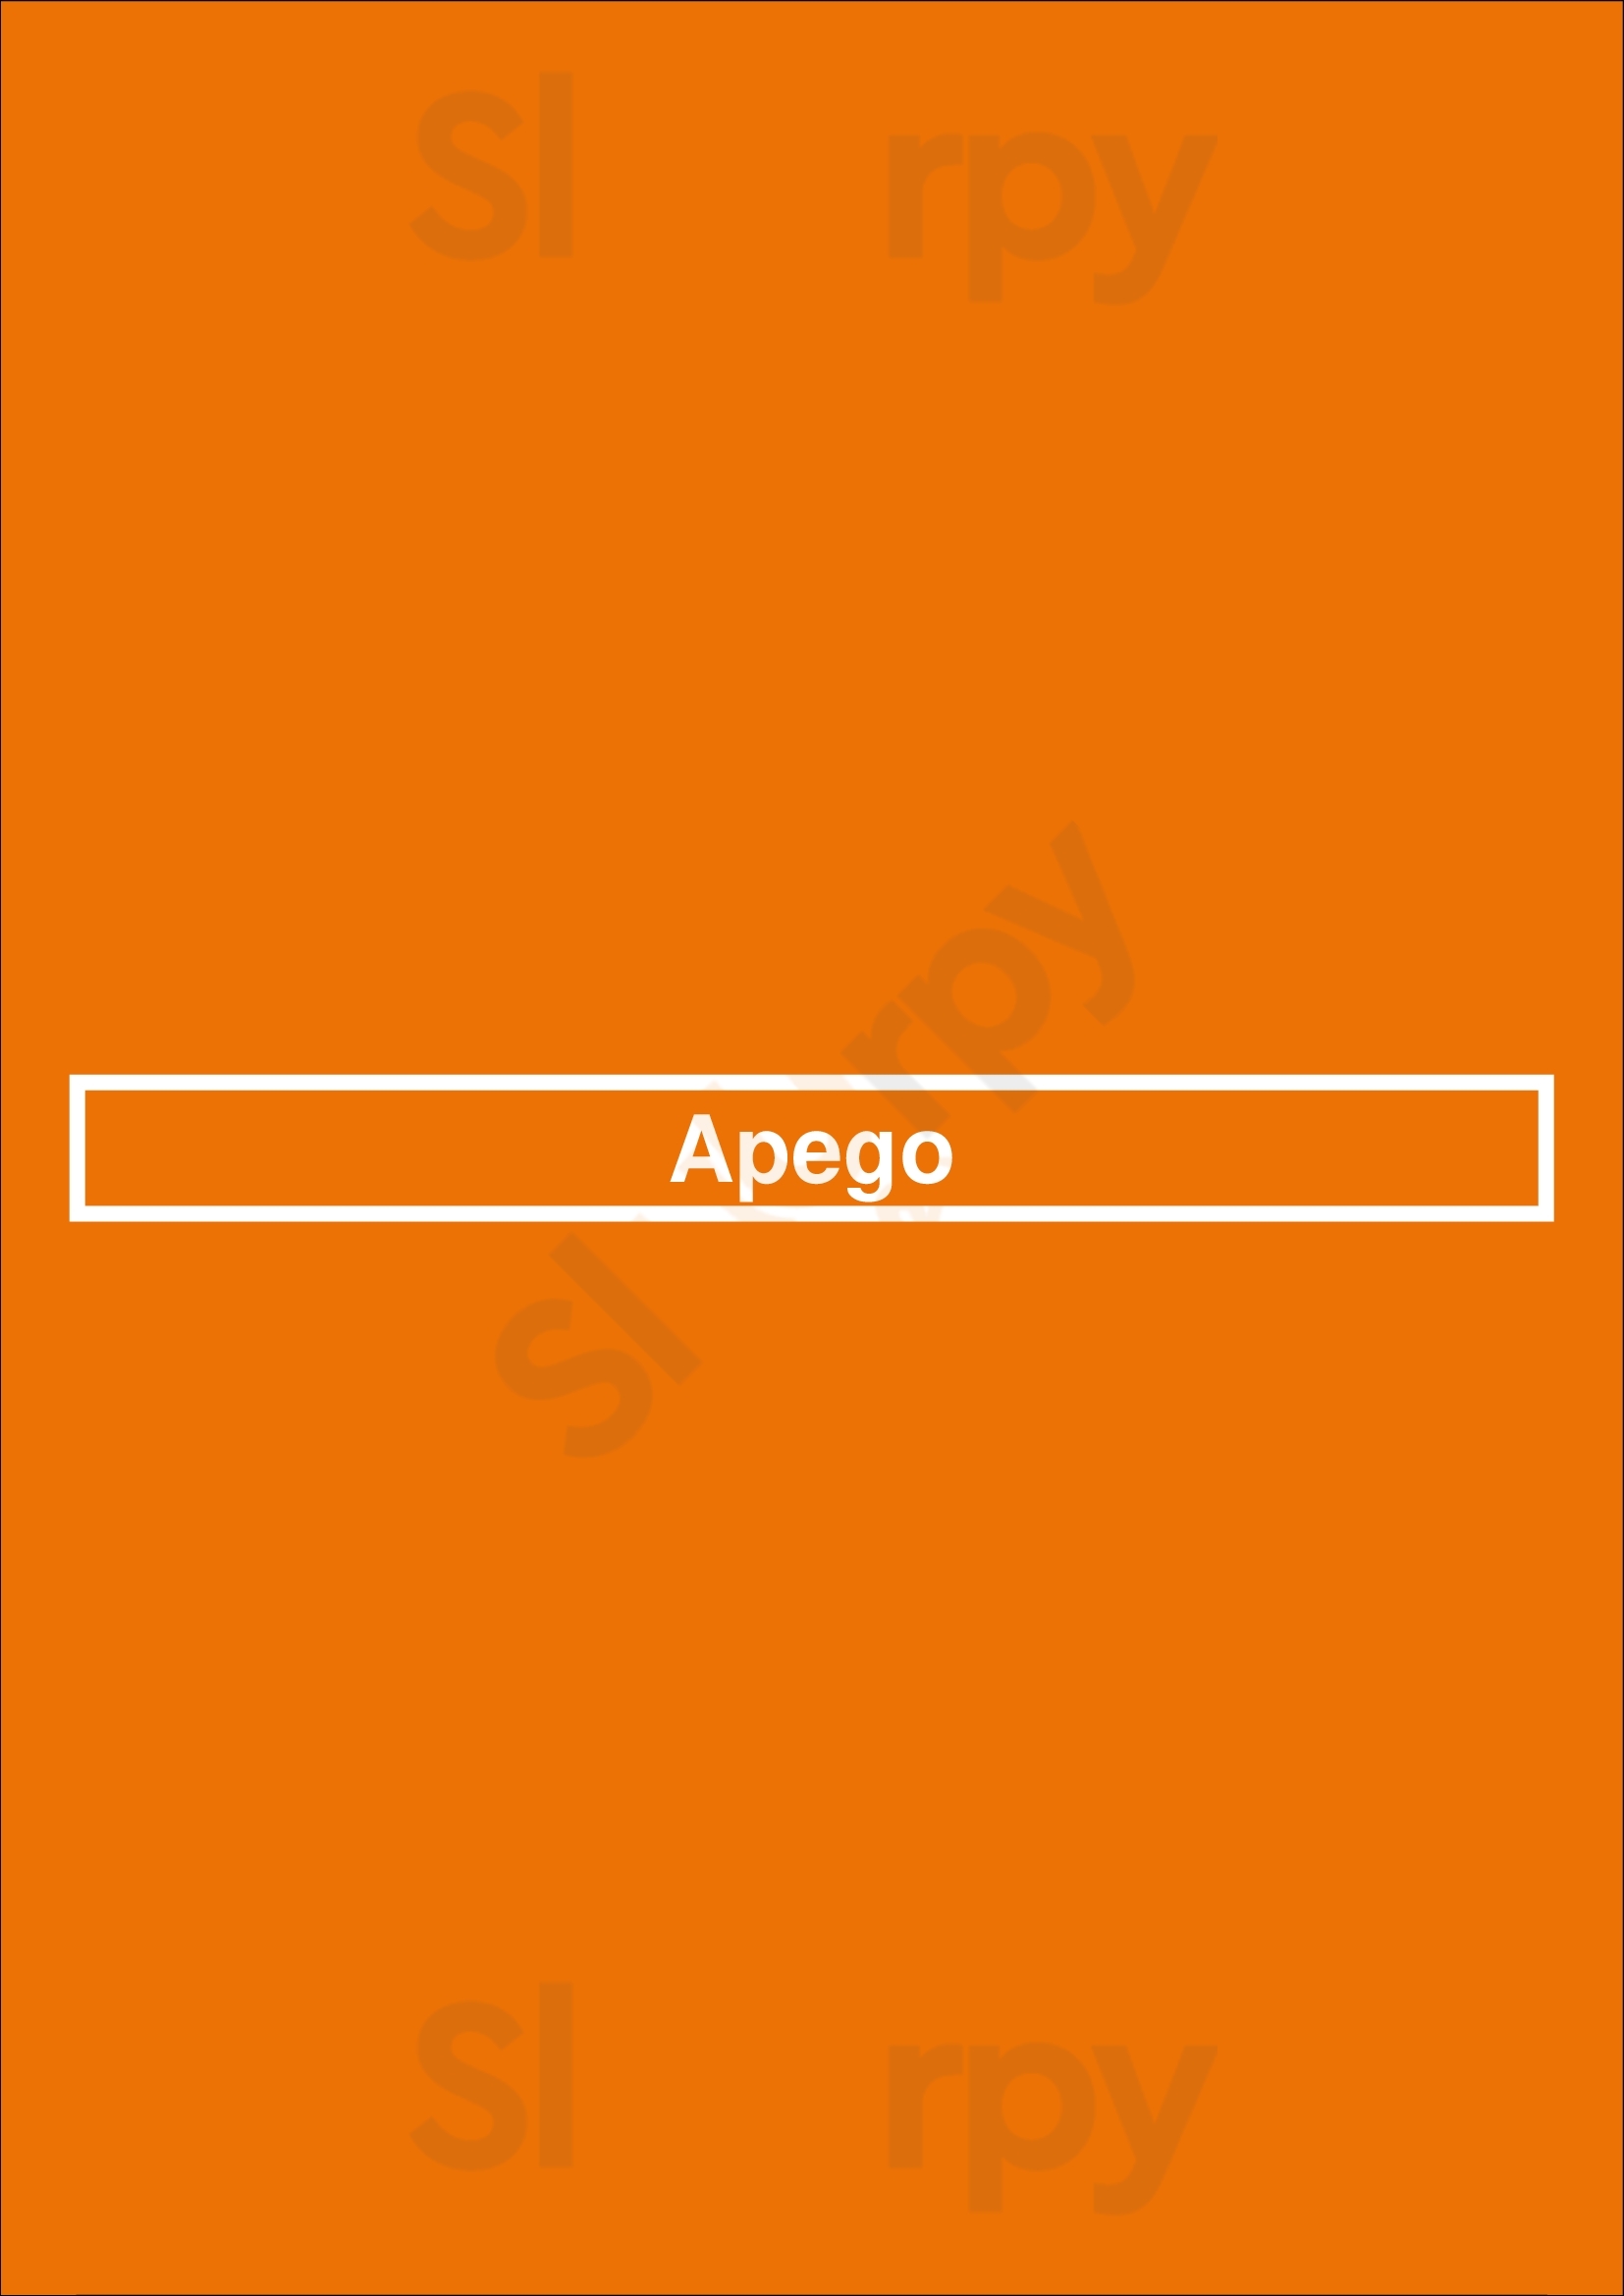 Apego Porto Menu - 1